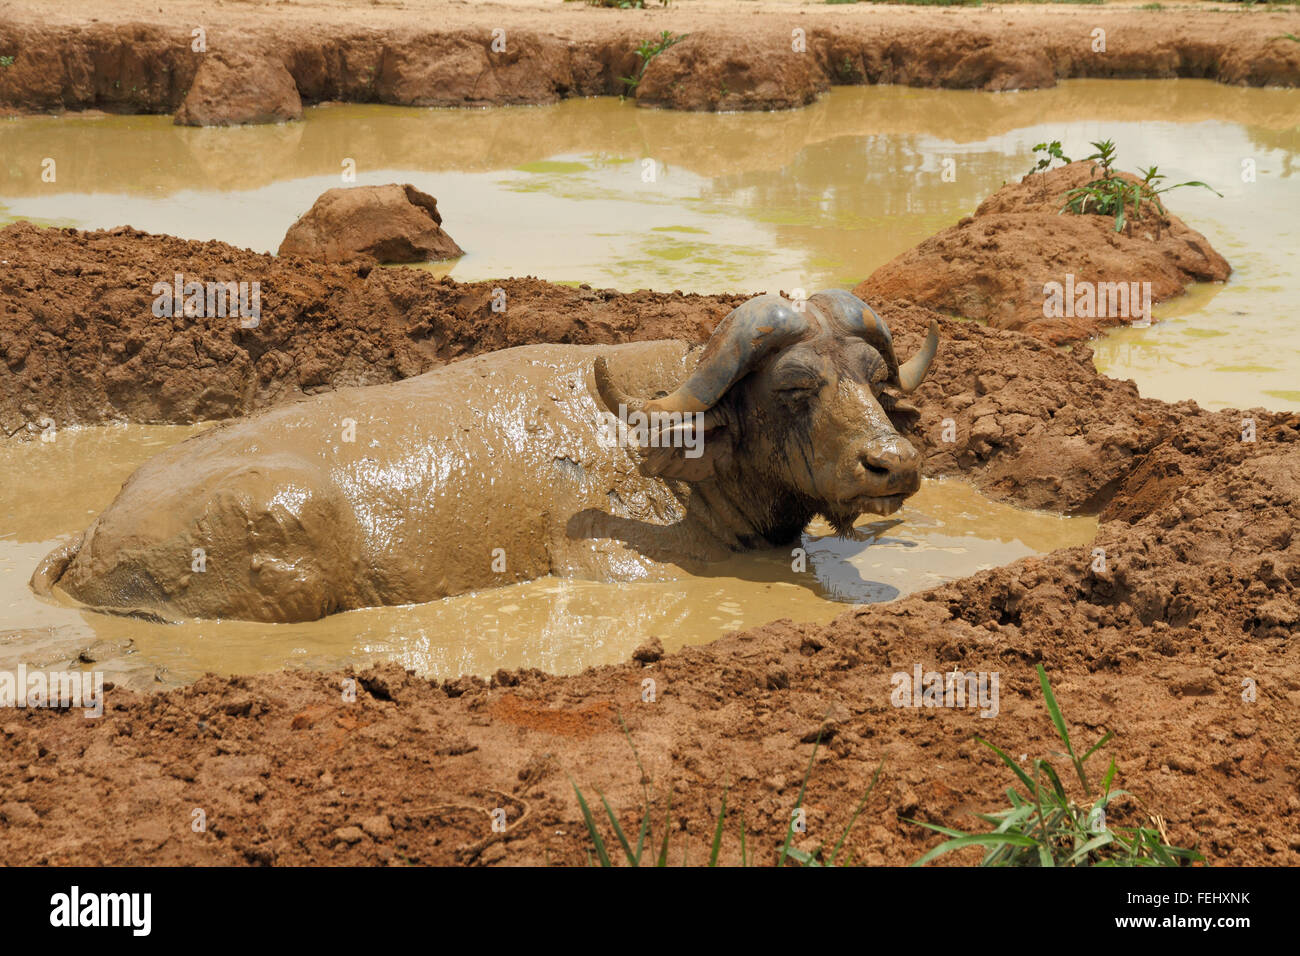 Eine afrikanische Kaffernbüffel entspannt in ein Schlamm wälzen, die fliegen zu entkommen. Stockfoto